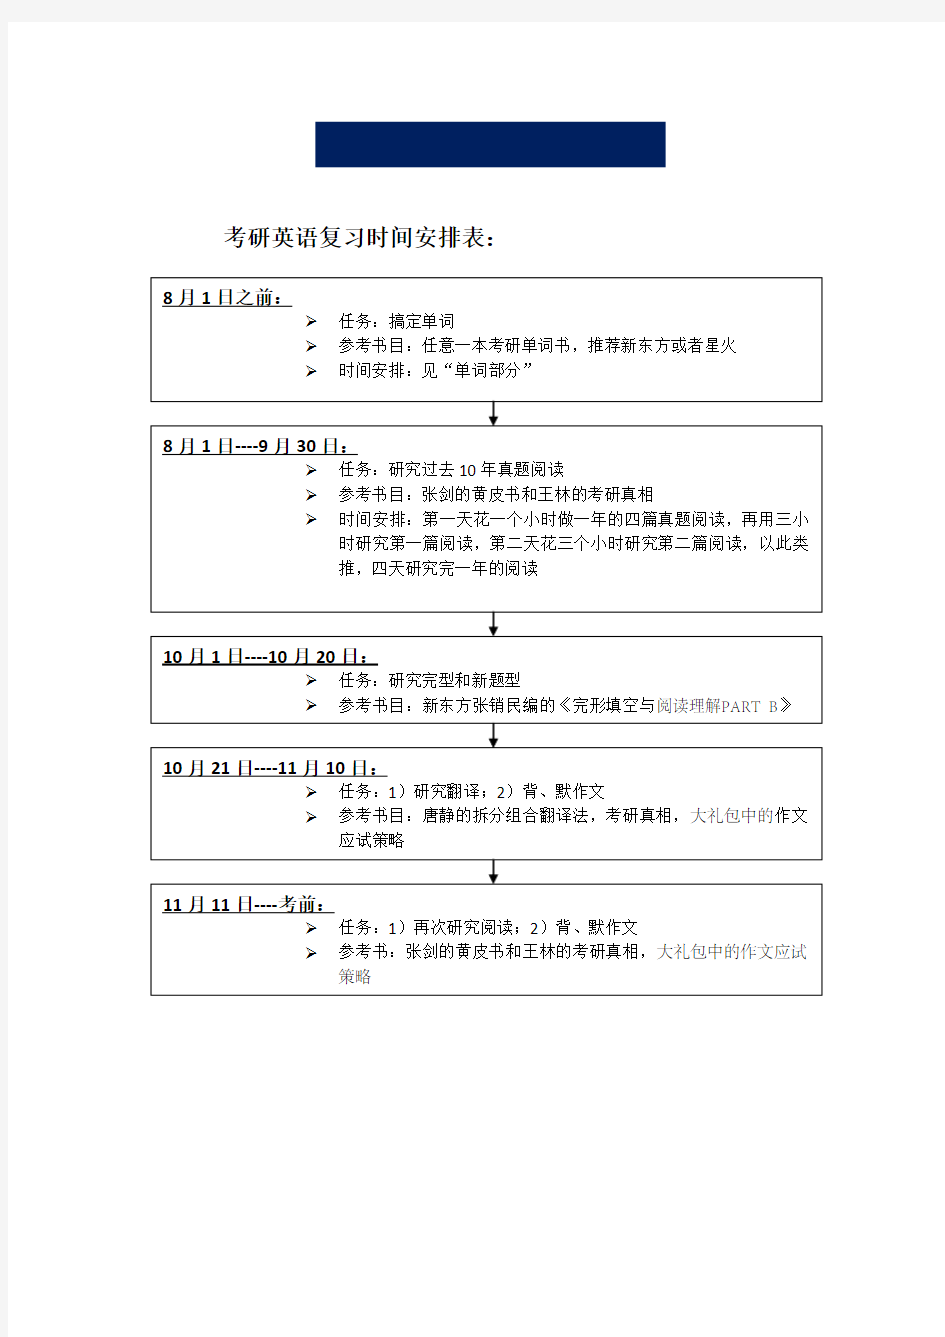 考研英语一复习时间安排.pdf